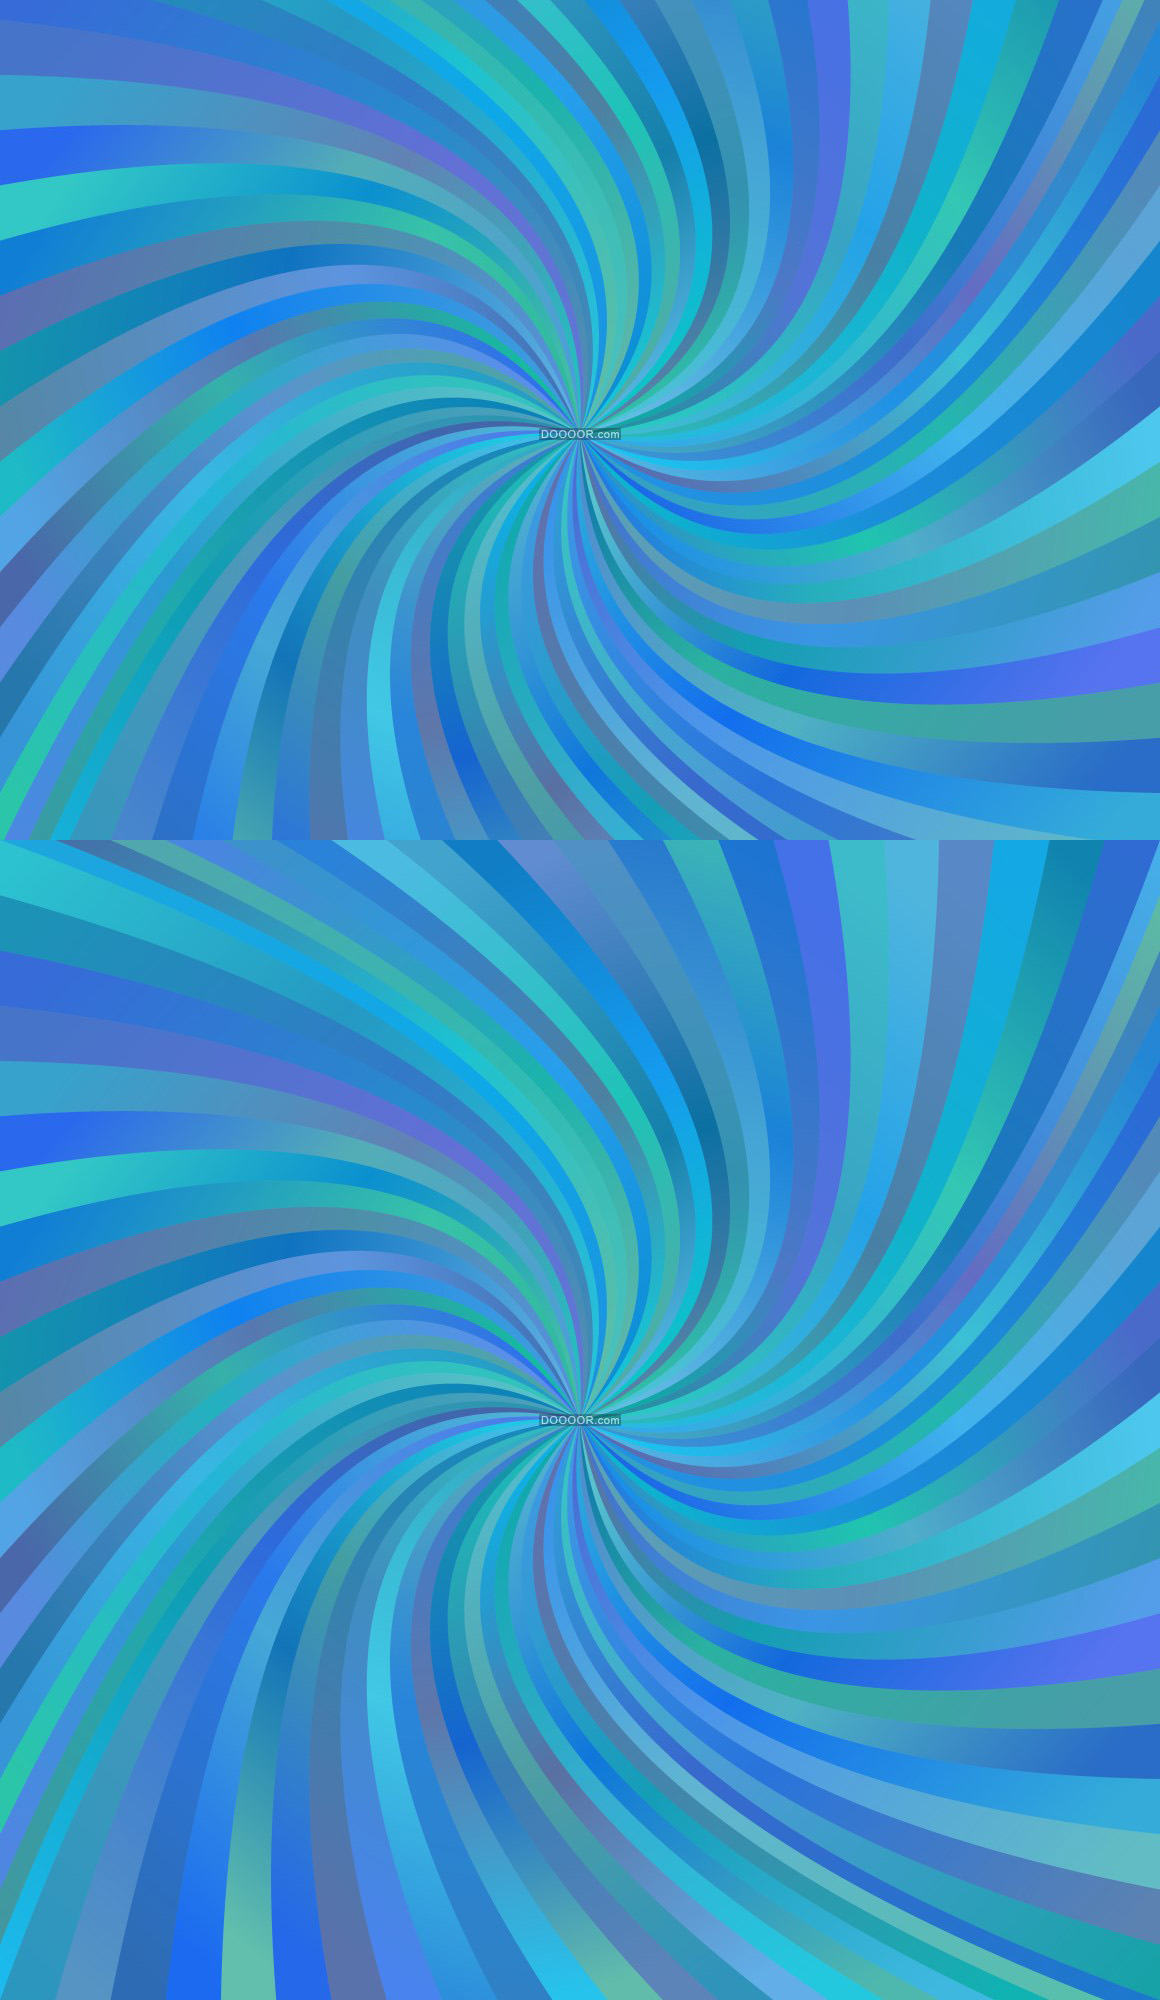 蓝色的背景中心形成一个螺旋状的多彩的辐射纹路背景花纹素材设计